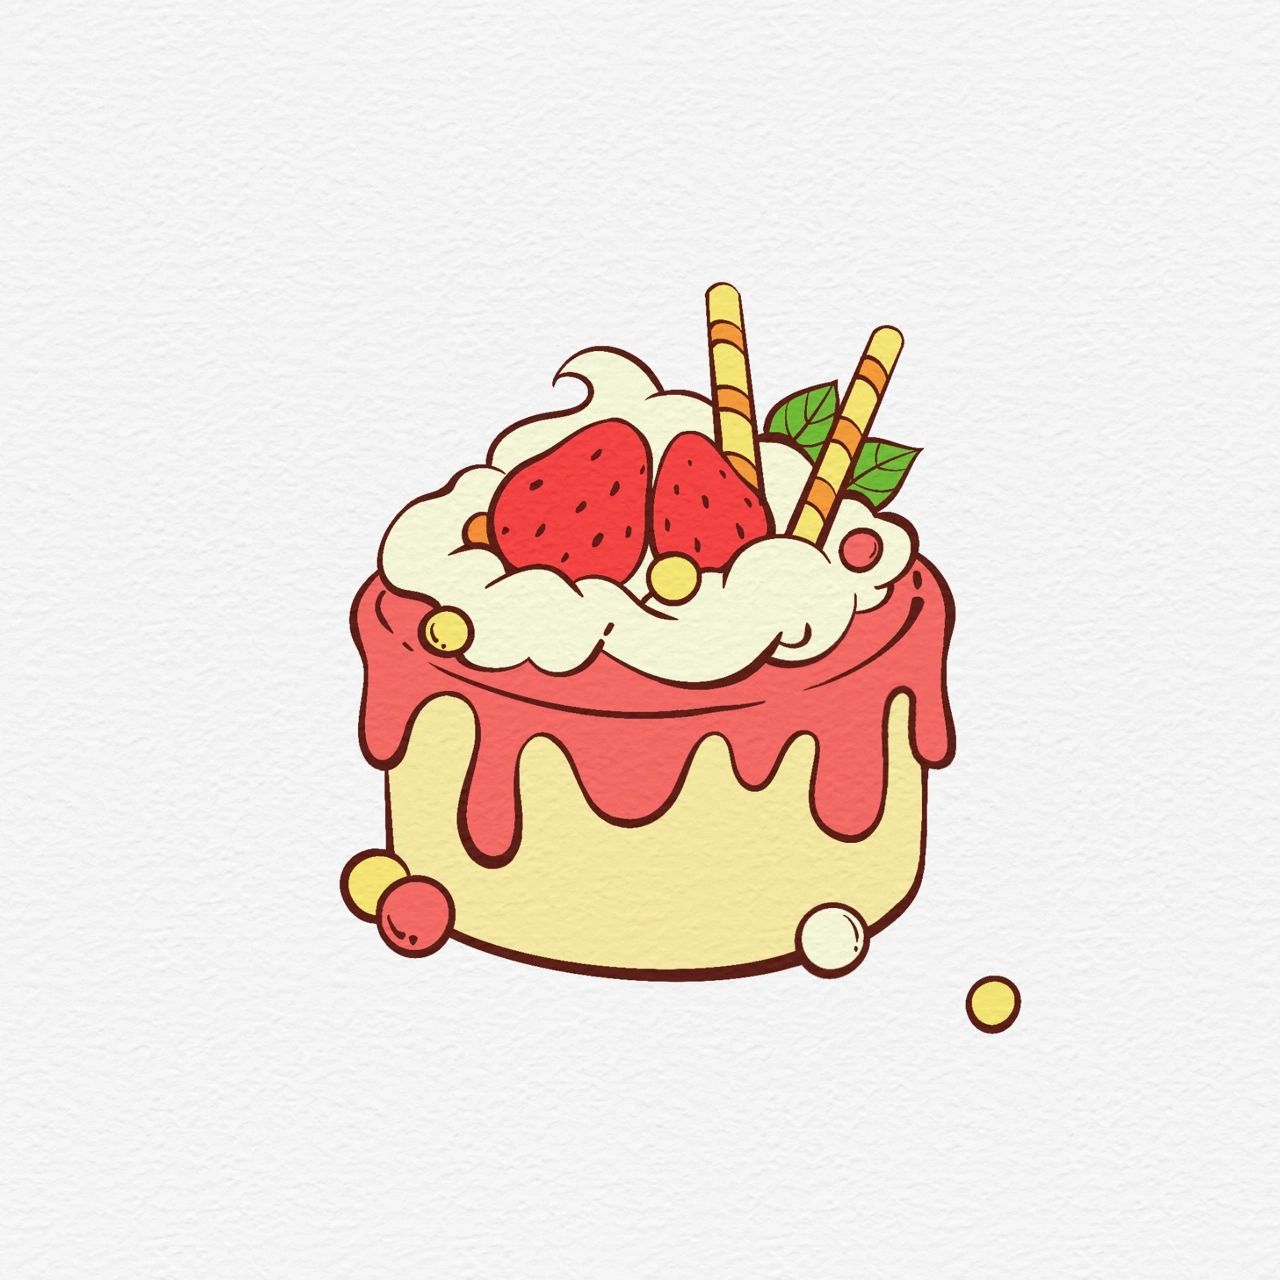 【简笔画·06】草莓味的小蛋糕简笔画 突然想吃草莓蛋糕90哈哈哈